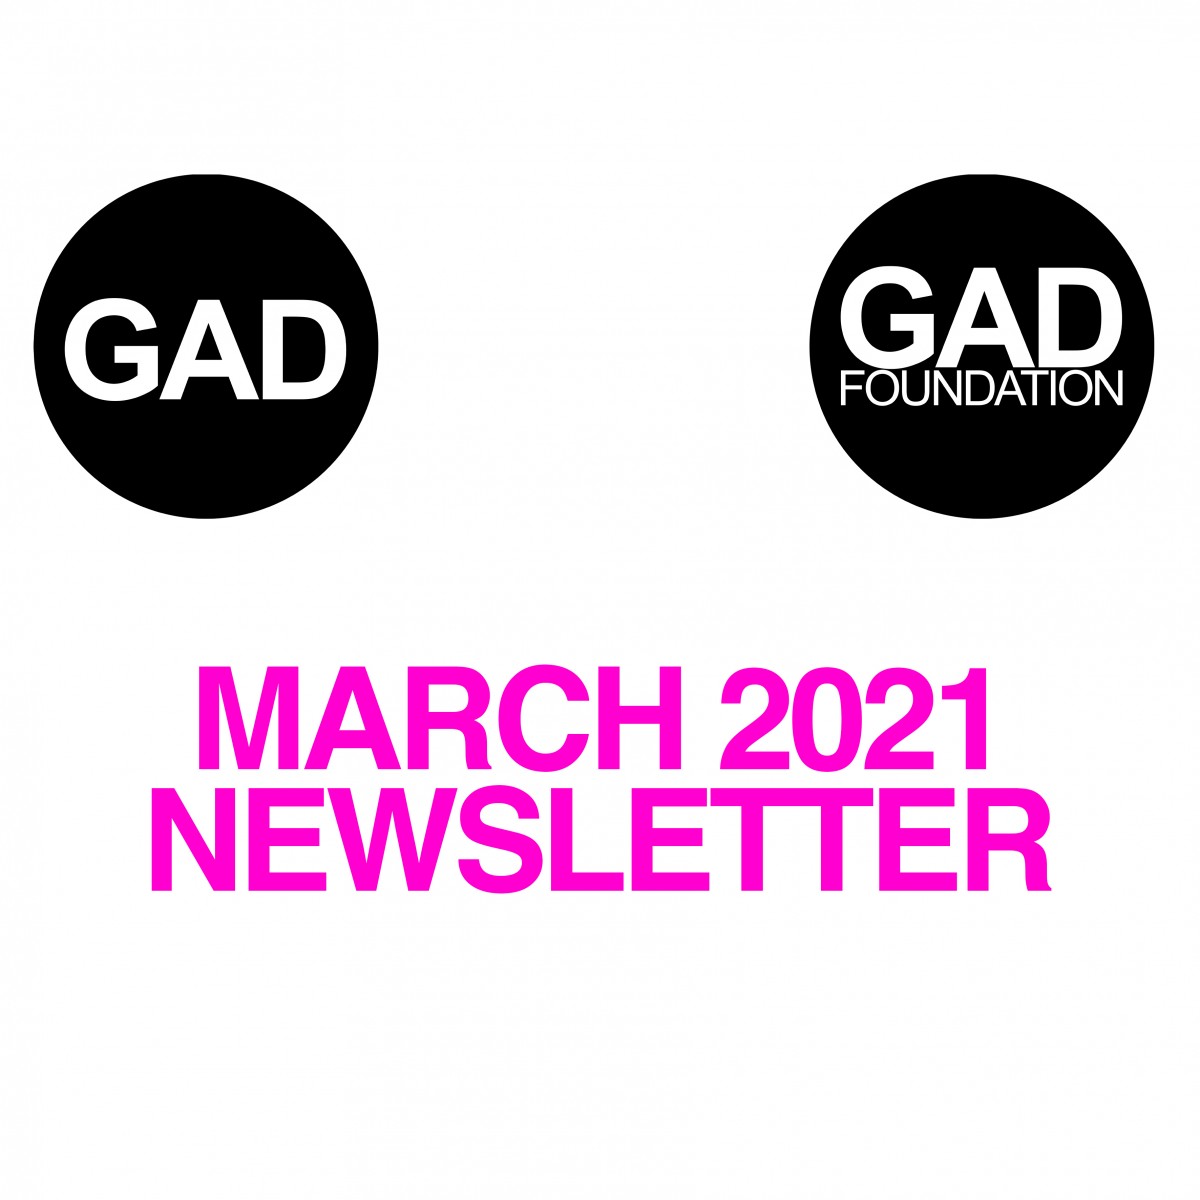 Mart 2021 Newsletter